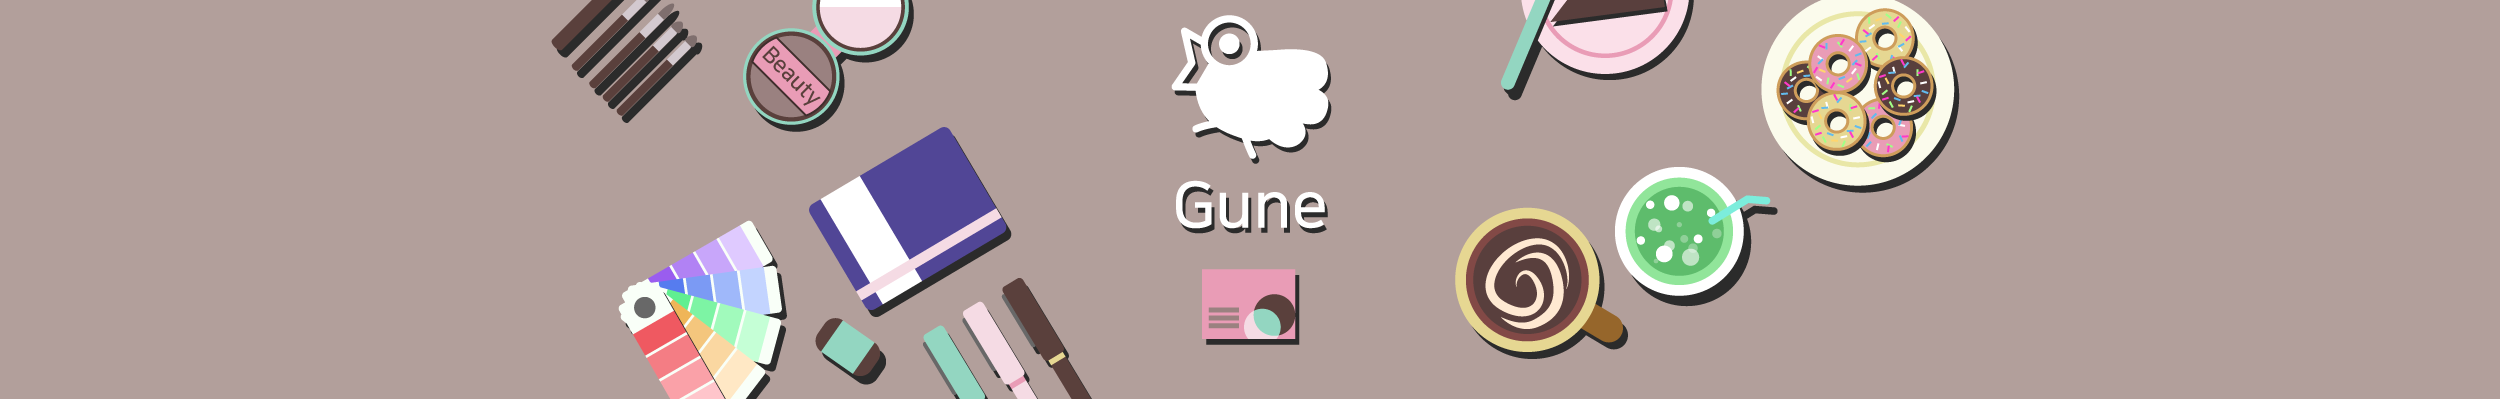 Gune CelestialNavy's profile banner